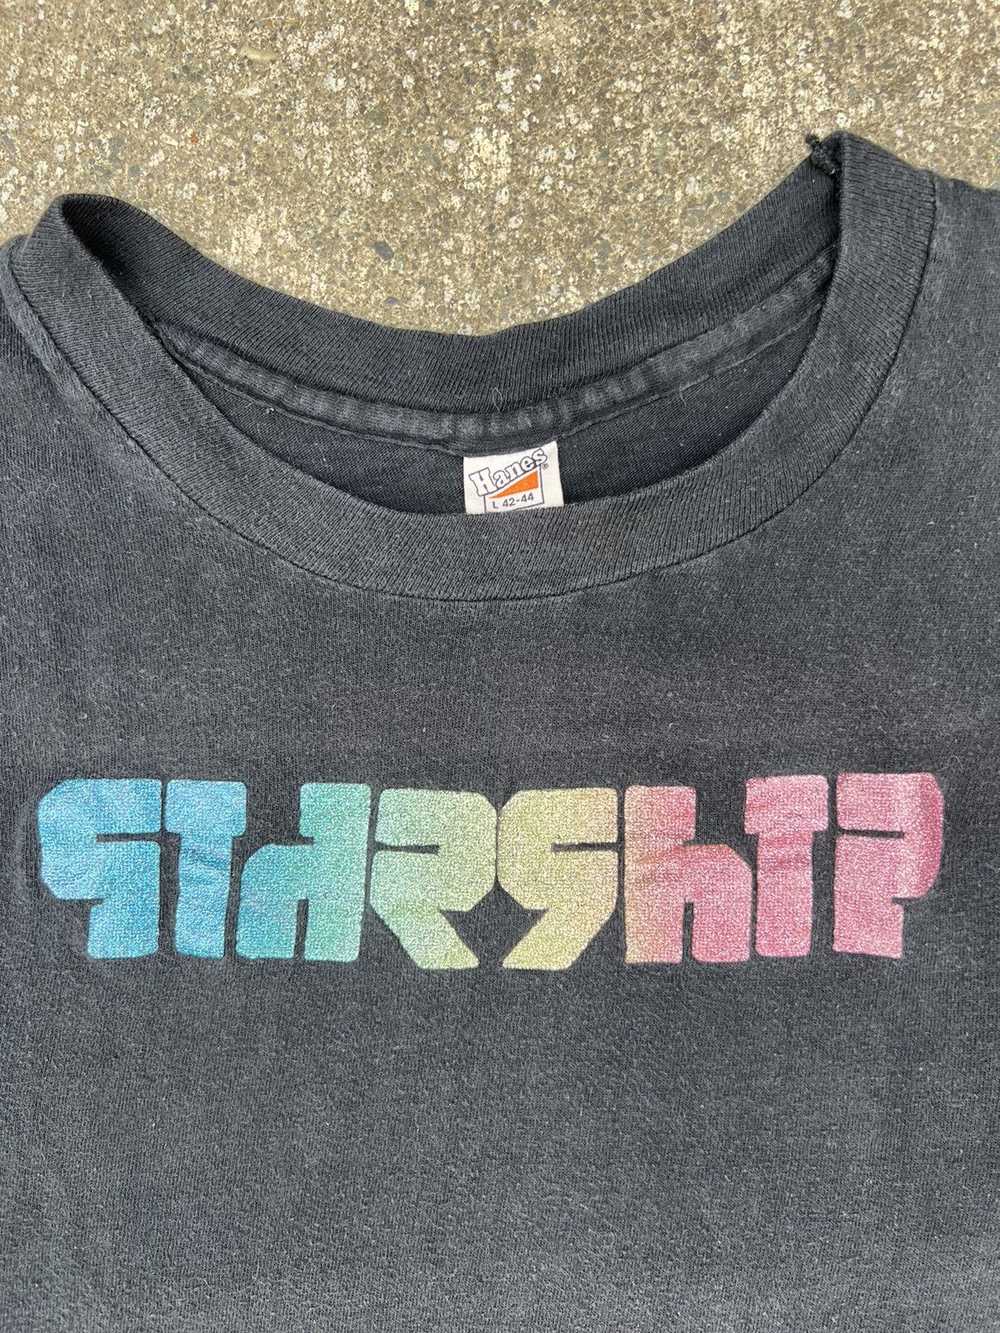 Vintage Vintage 1970s Single Stitch “Starship” Tee - image 3